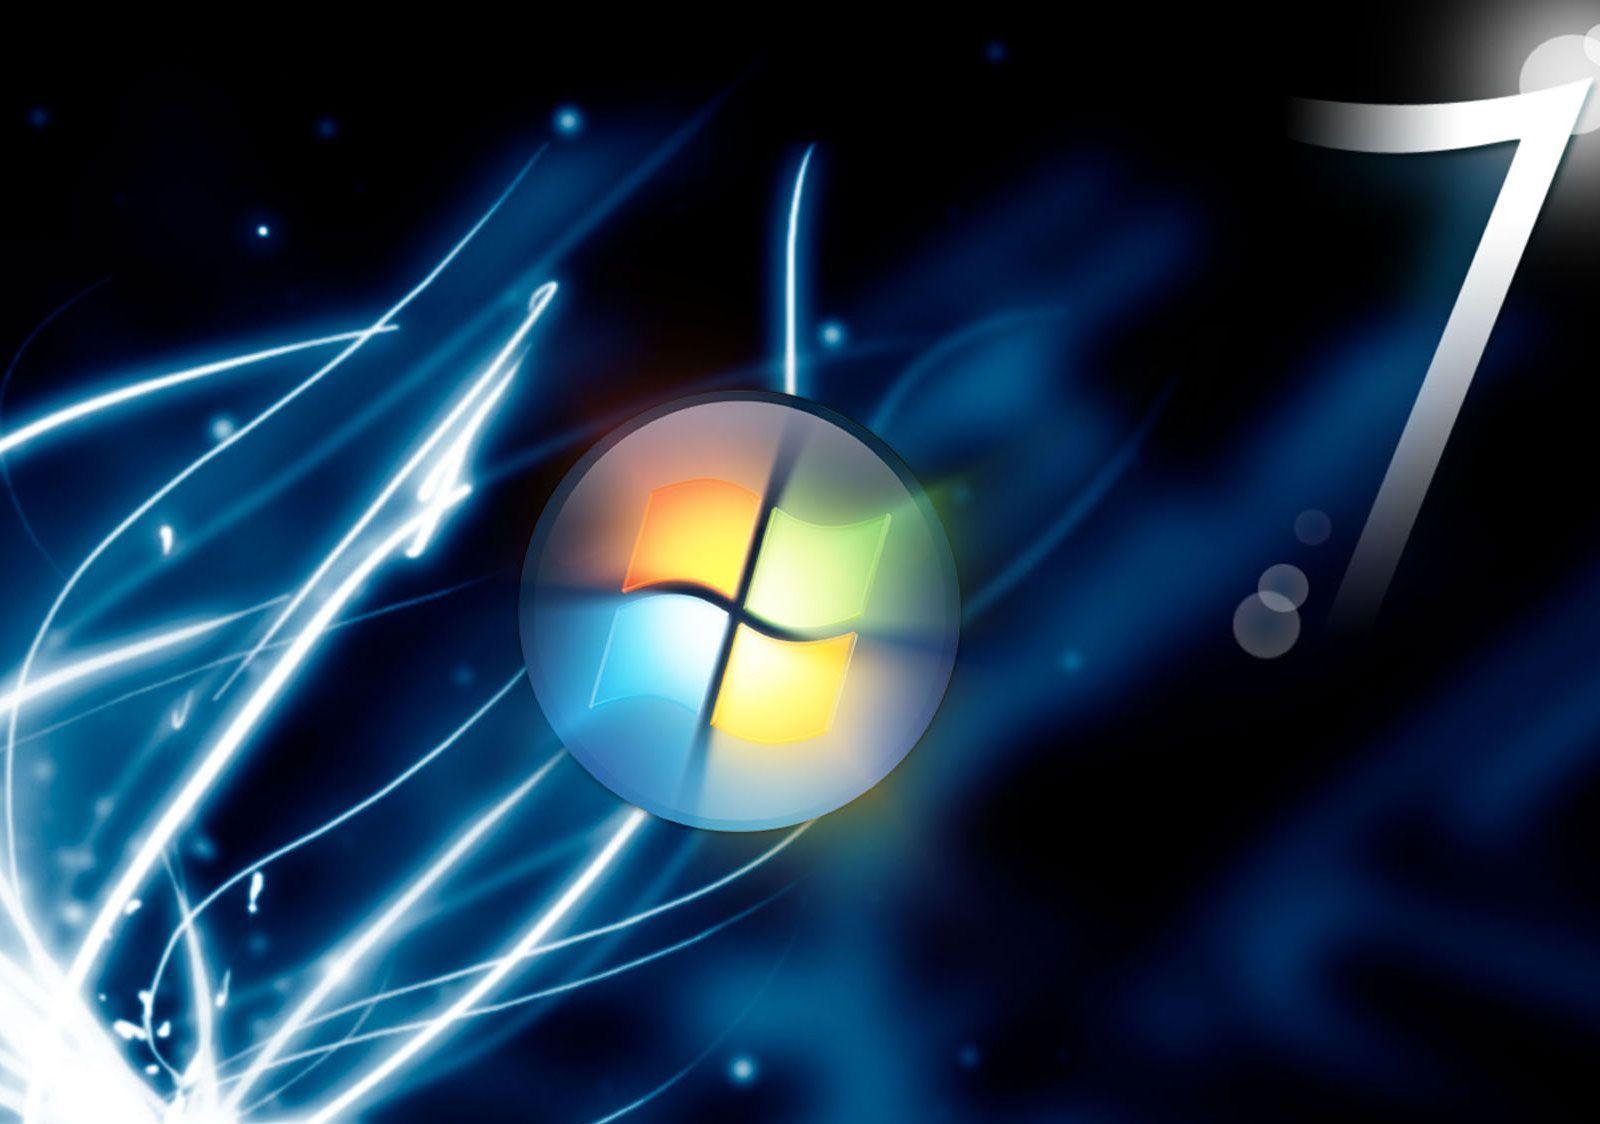 live desktop backgrounds for windows 7